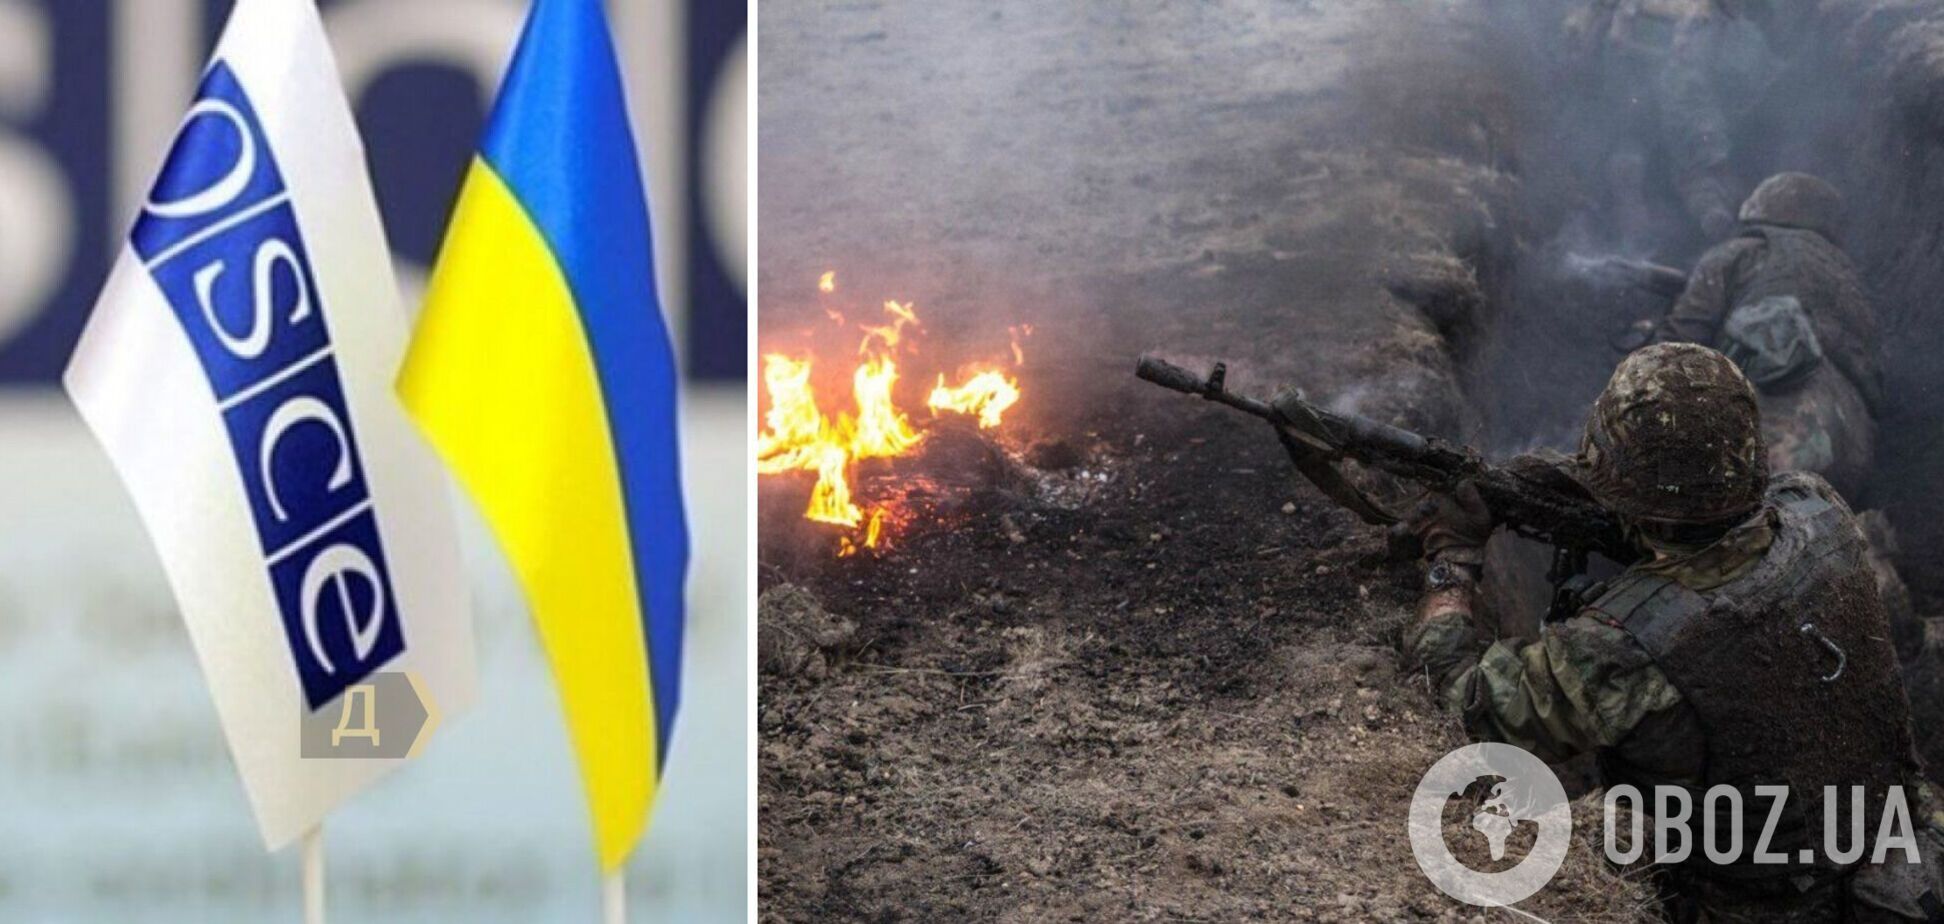 Украинская делегация потребовала созвать экстренное заседание ТКГ из-за обострения на Донбассе